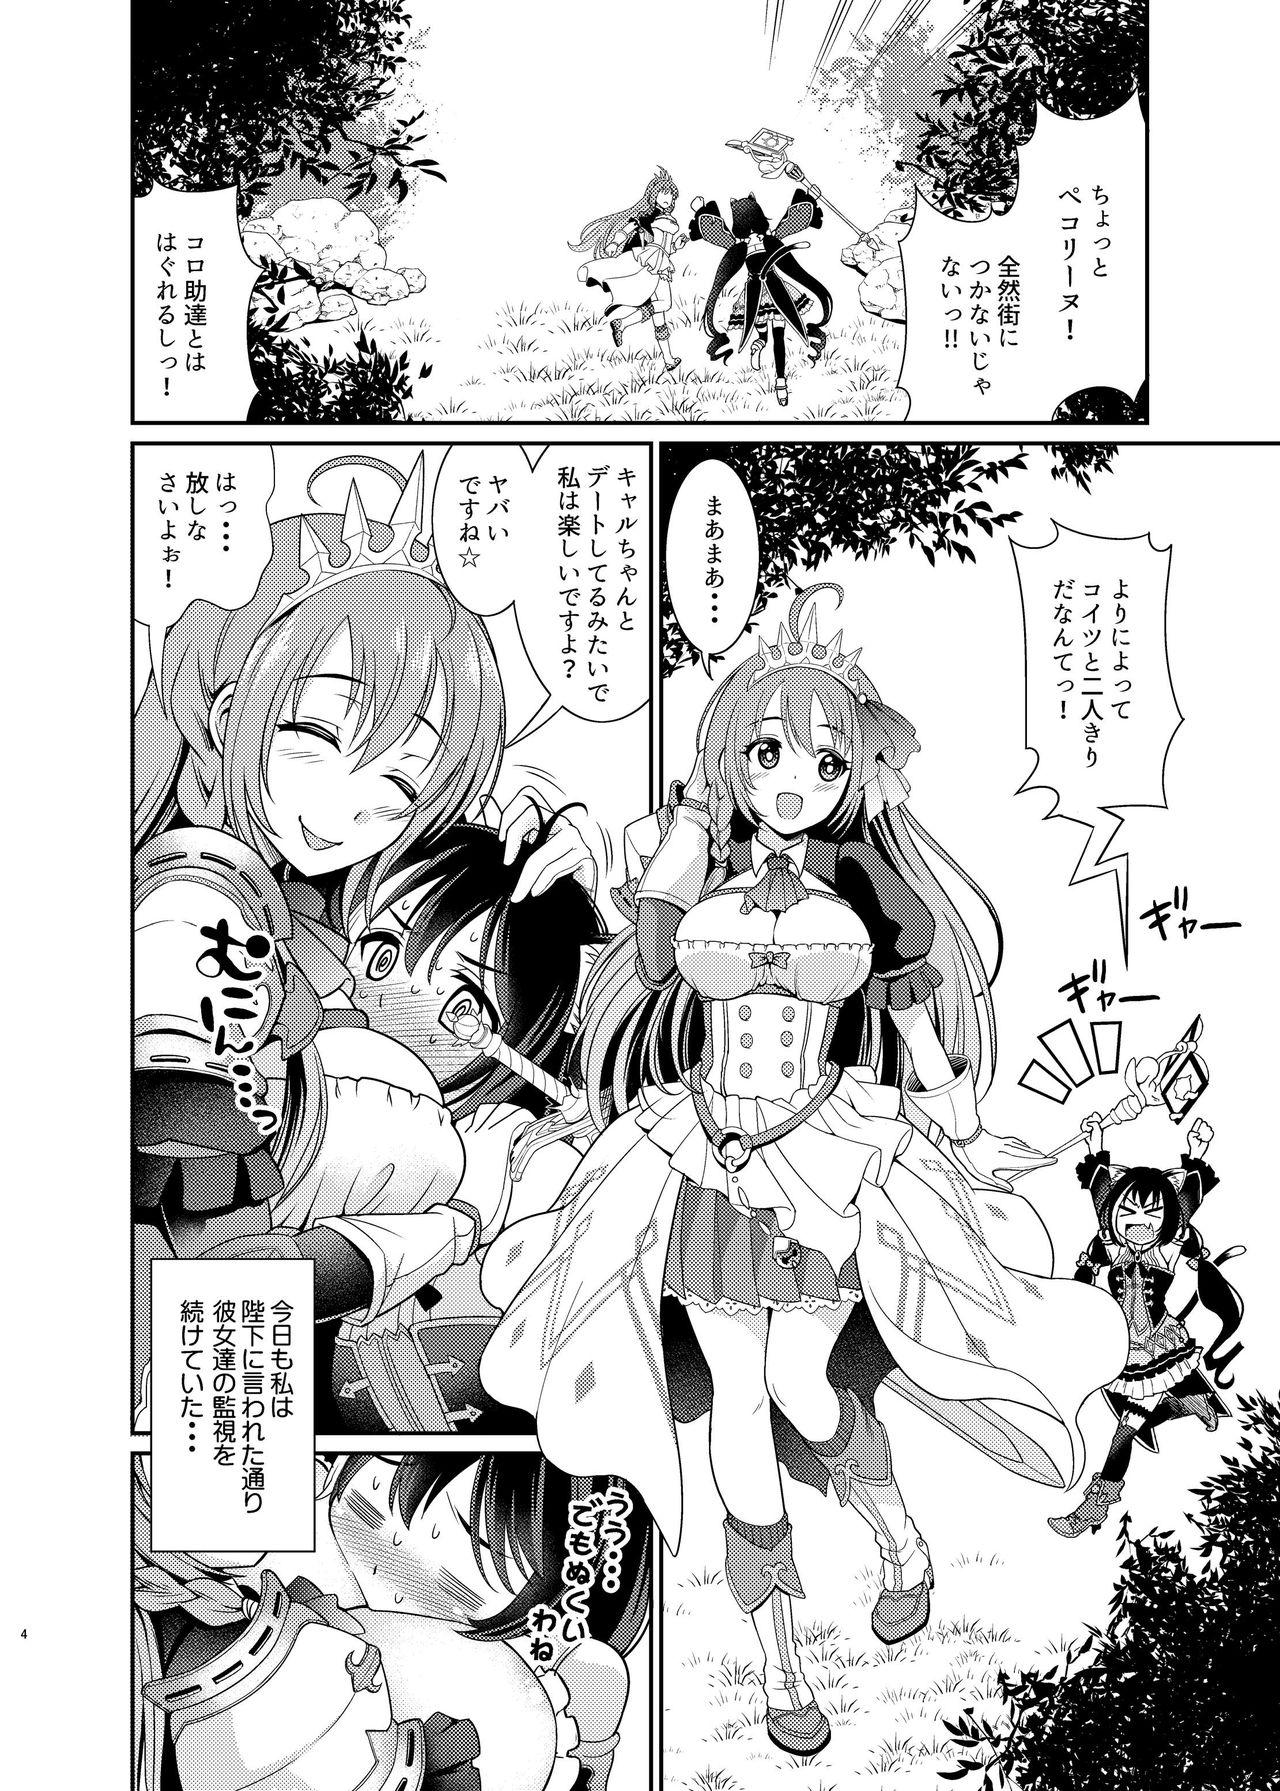 Teens Mamono Nante Tabaru Kara ... Ochinchin ga Hae chaunoyo!! - Princess connect Rough - Page 4